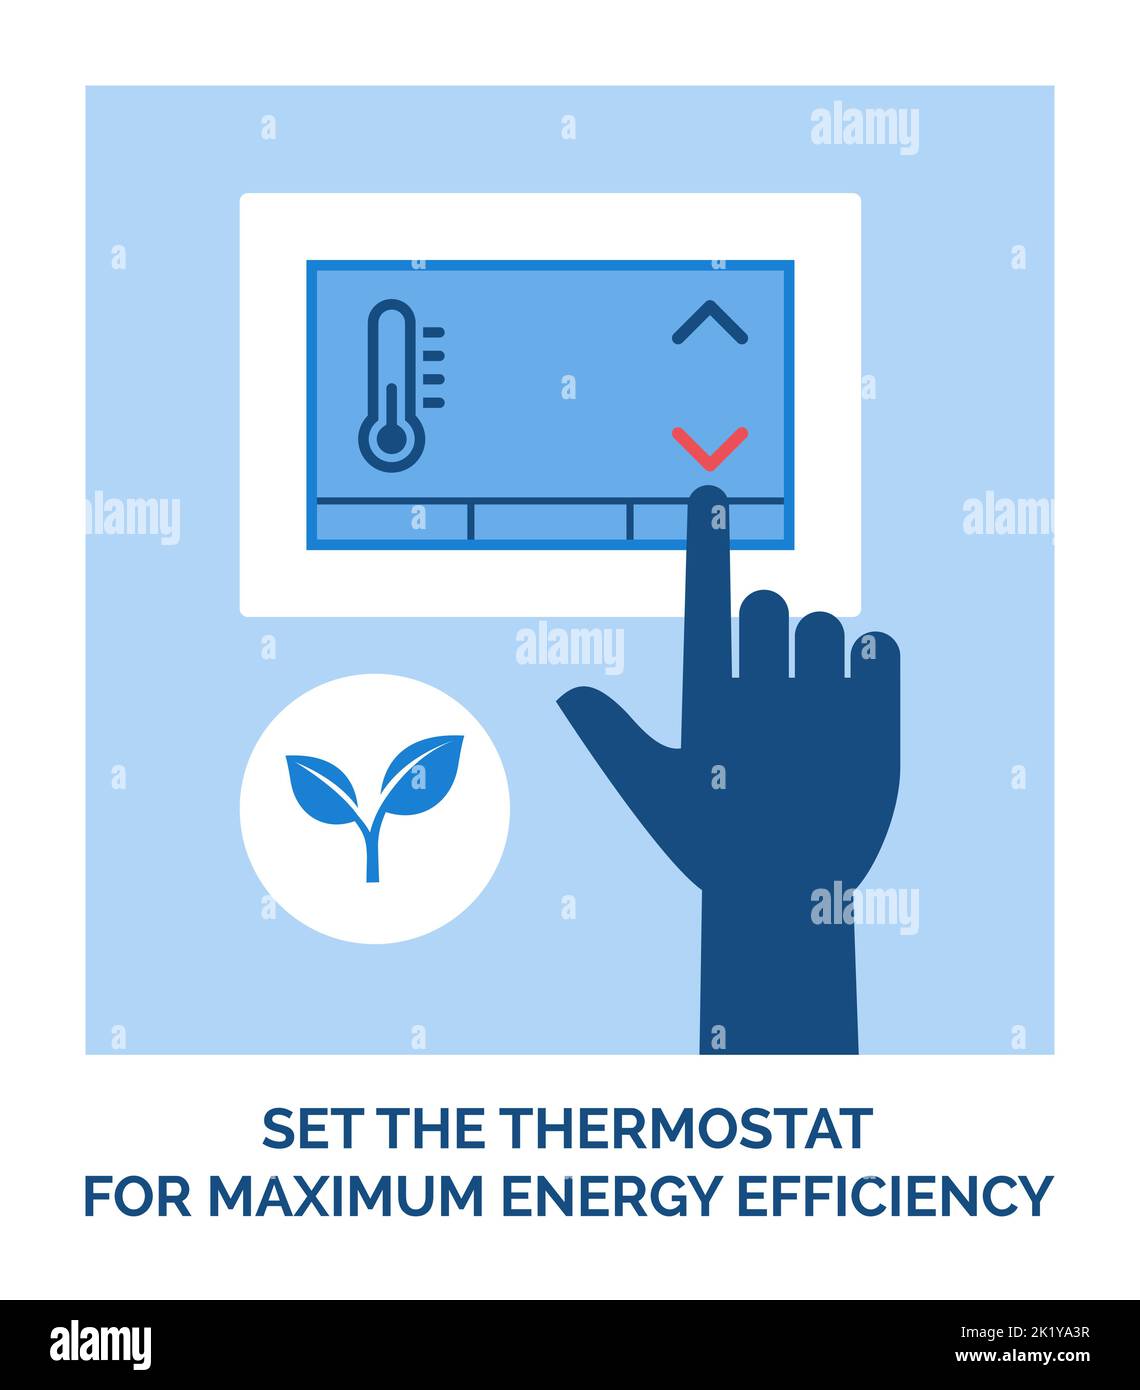 Stile di vita ecocompatibile: Impostare il termostato per la massima efficienza energetica Illustrazione Vettoriale